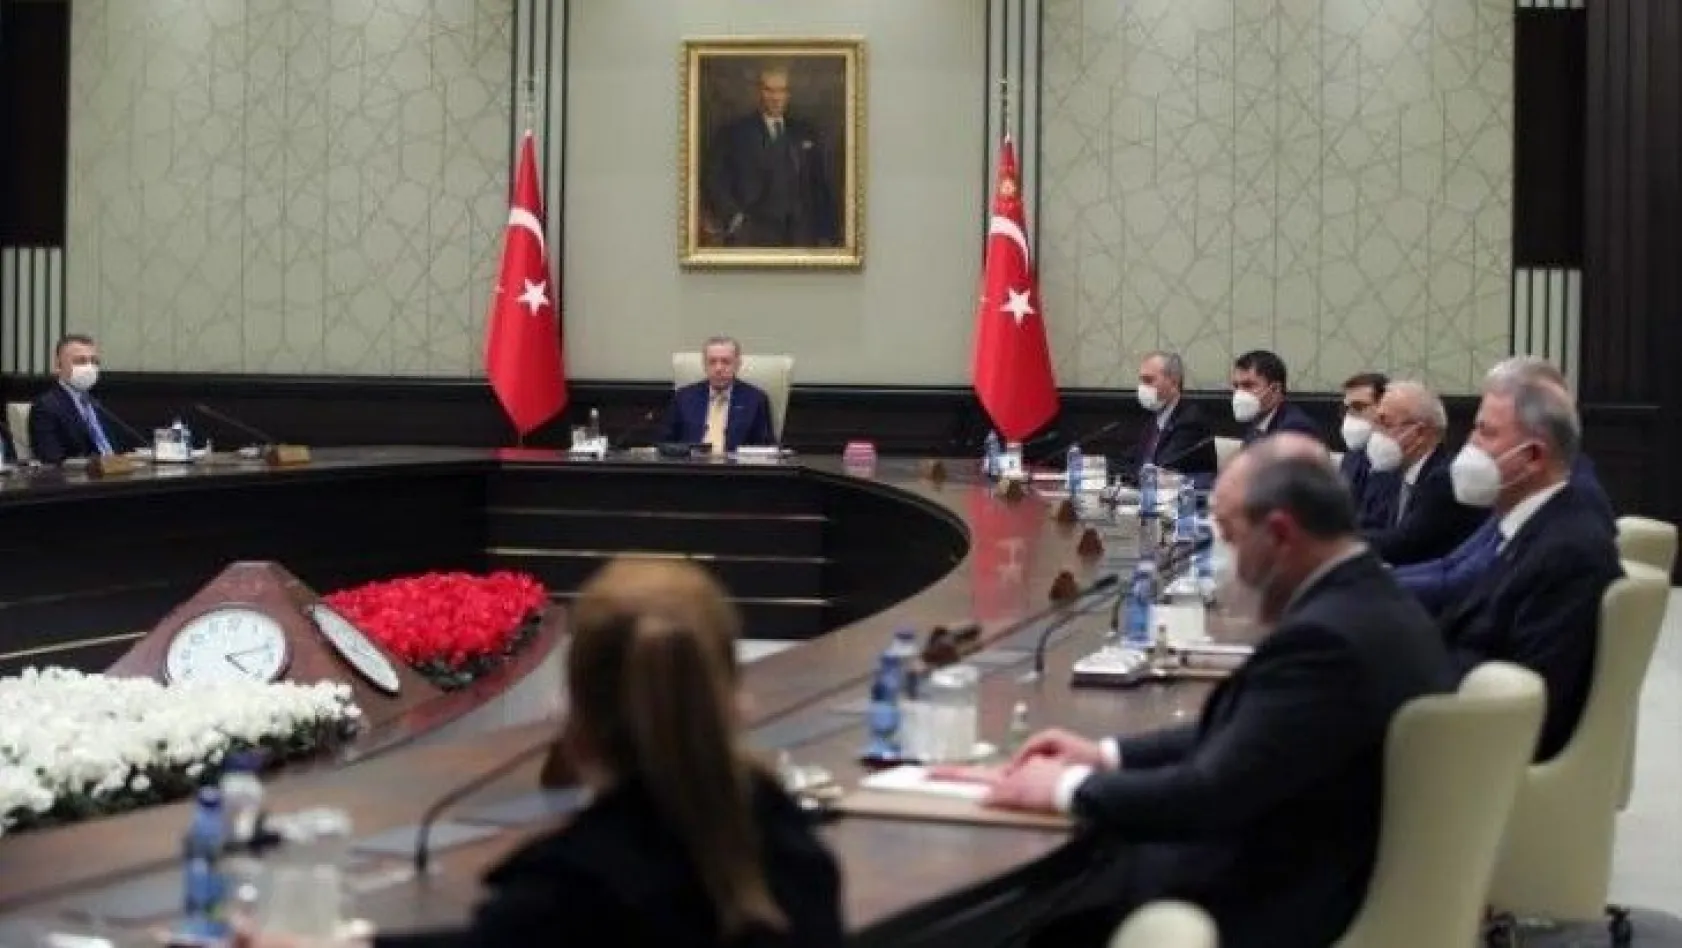 Türkiye'nin gözü kulağı bu toplantıda!